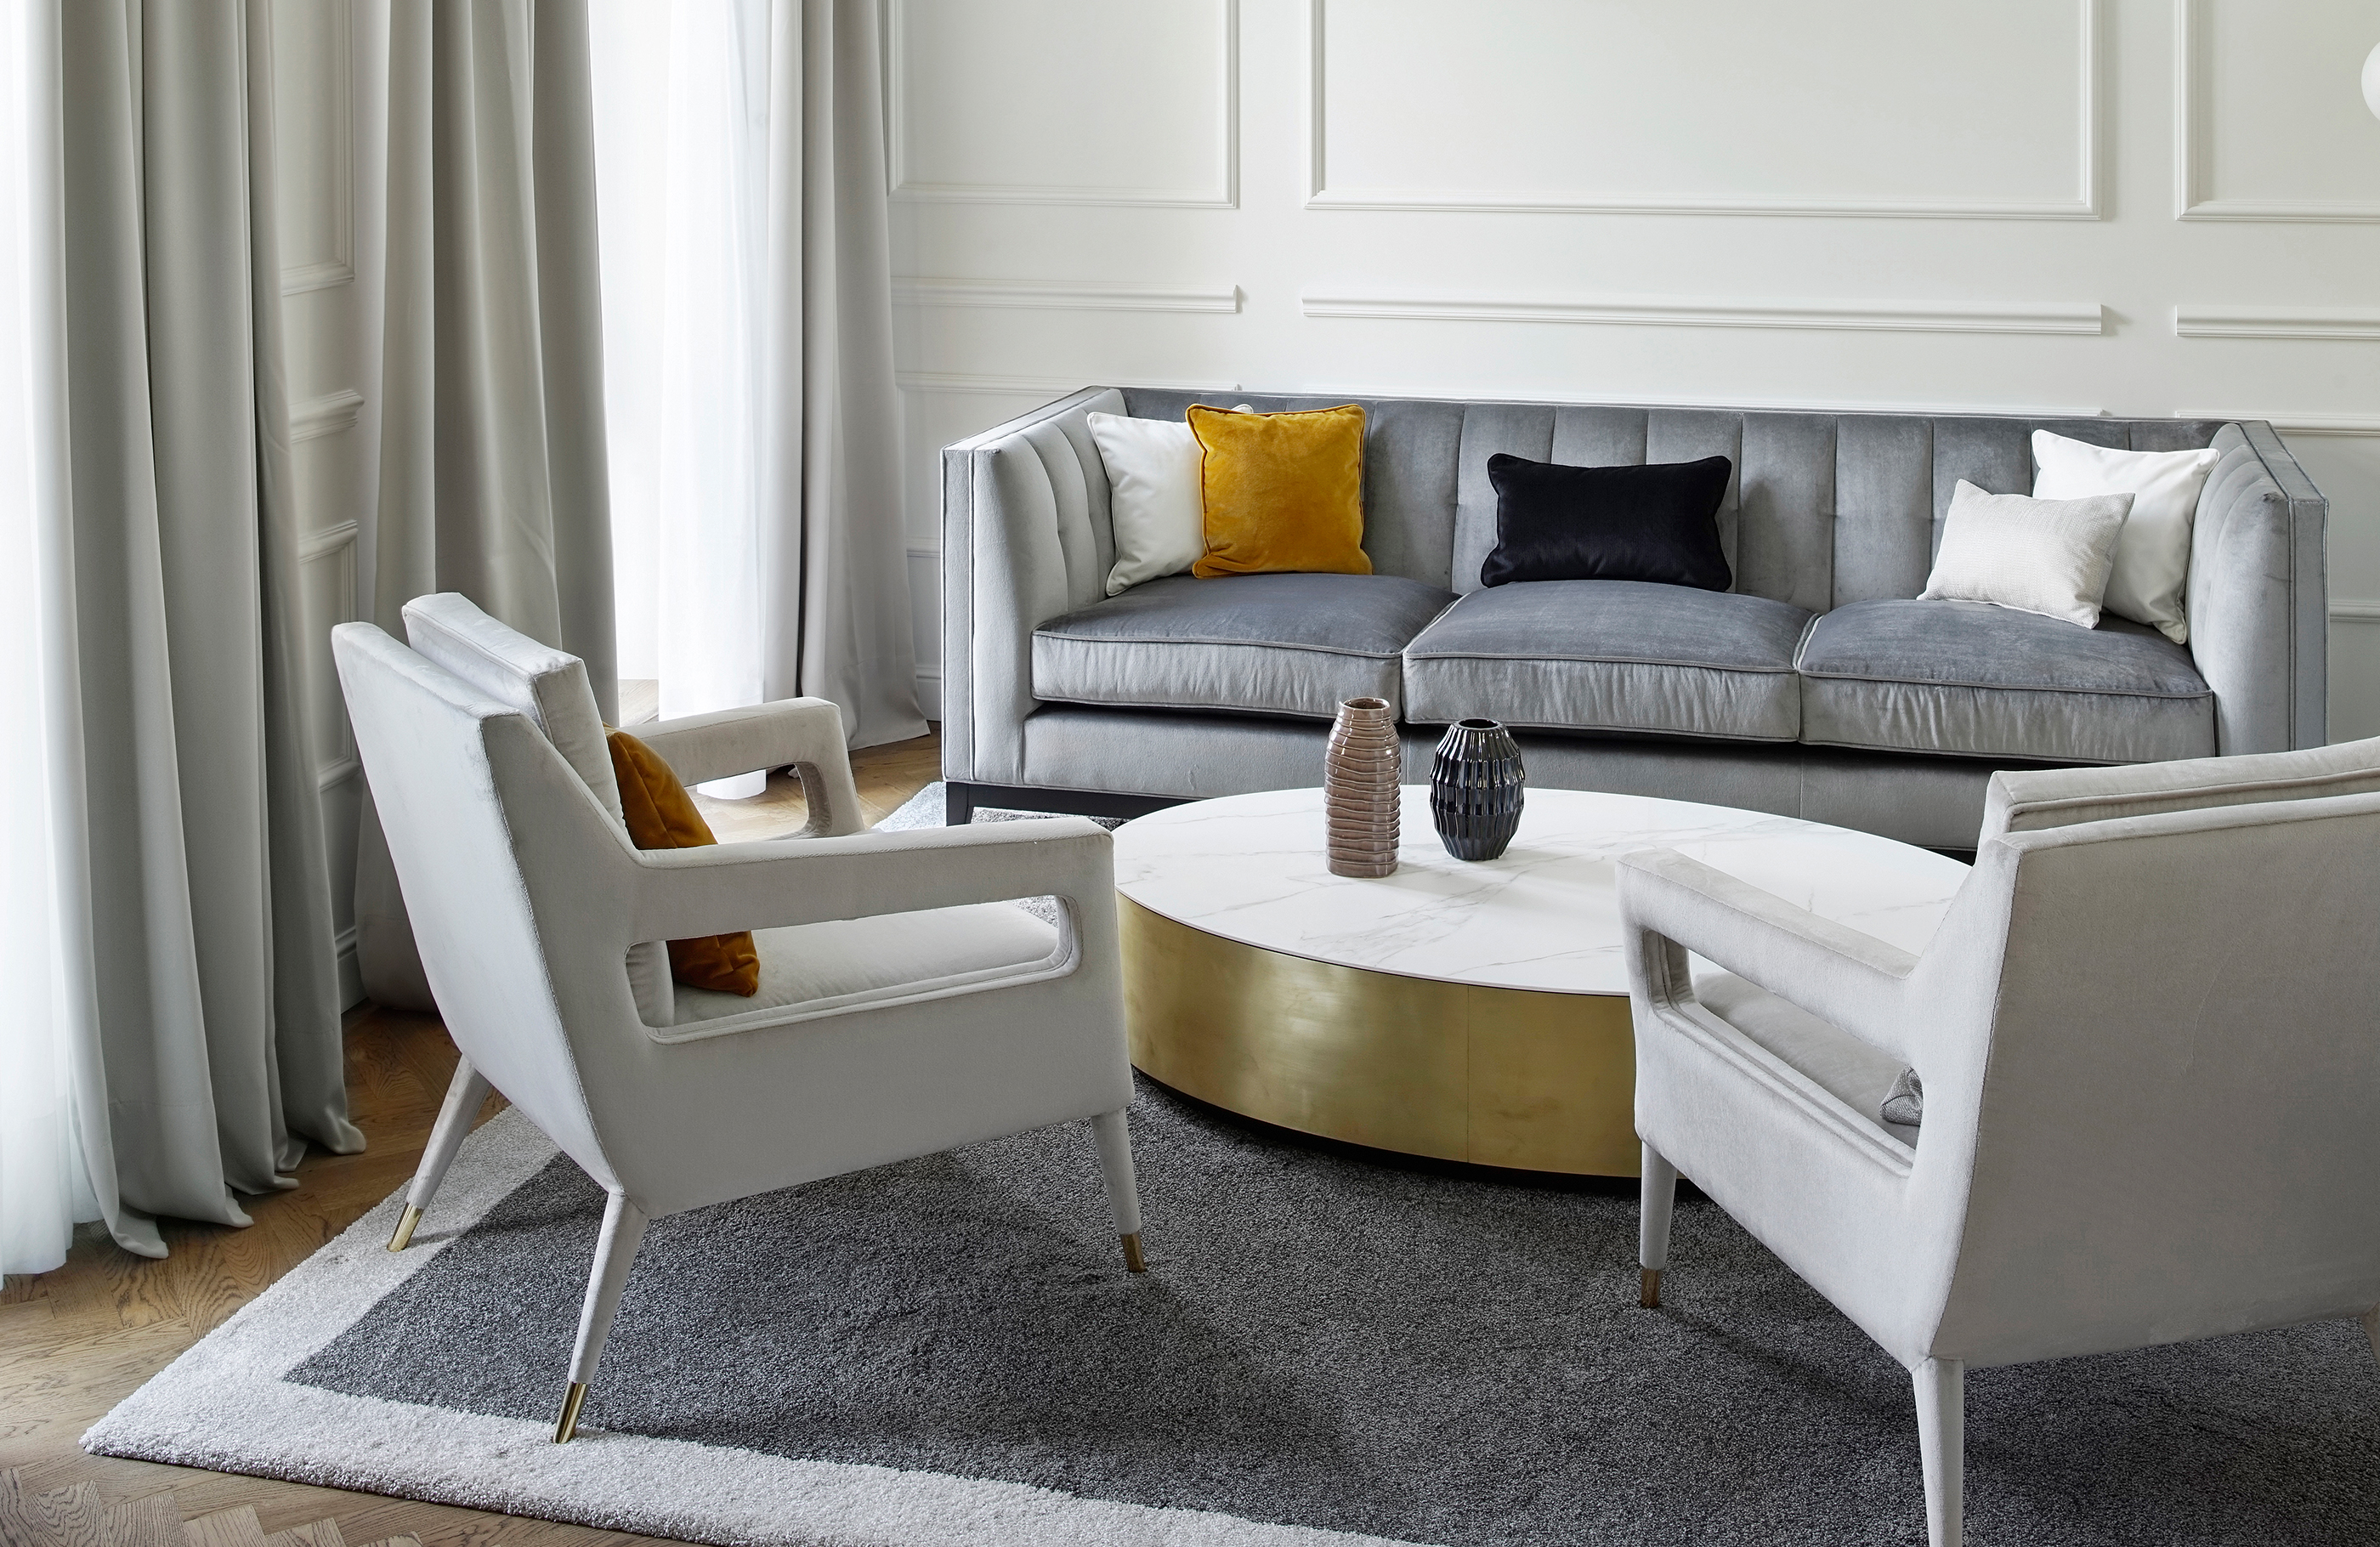 Aufnahme des Wohnzimmers mit einer grauen Couch aus Samt und zwei hellen Sesseln